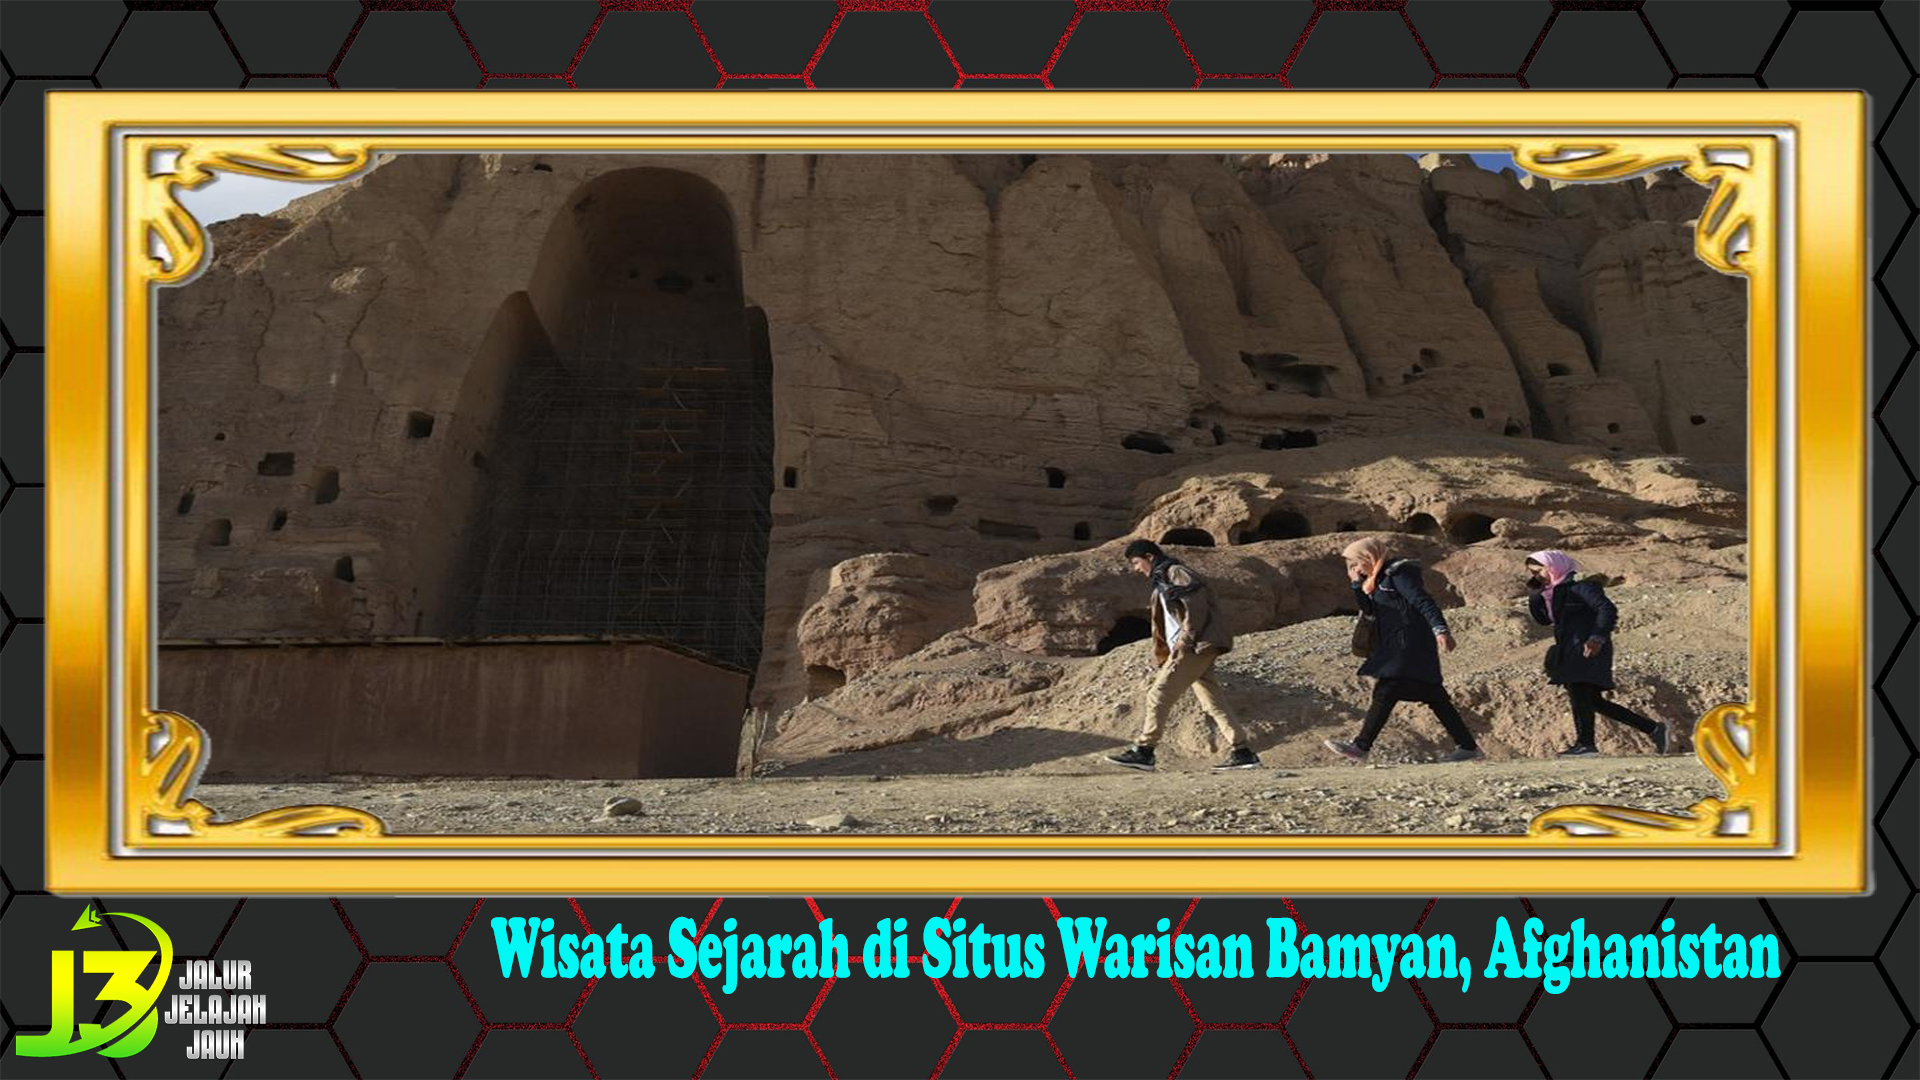 Wisata Sejarah di Situs Warisan Bamyan, Afghanistan